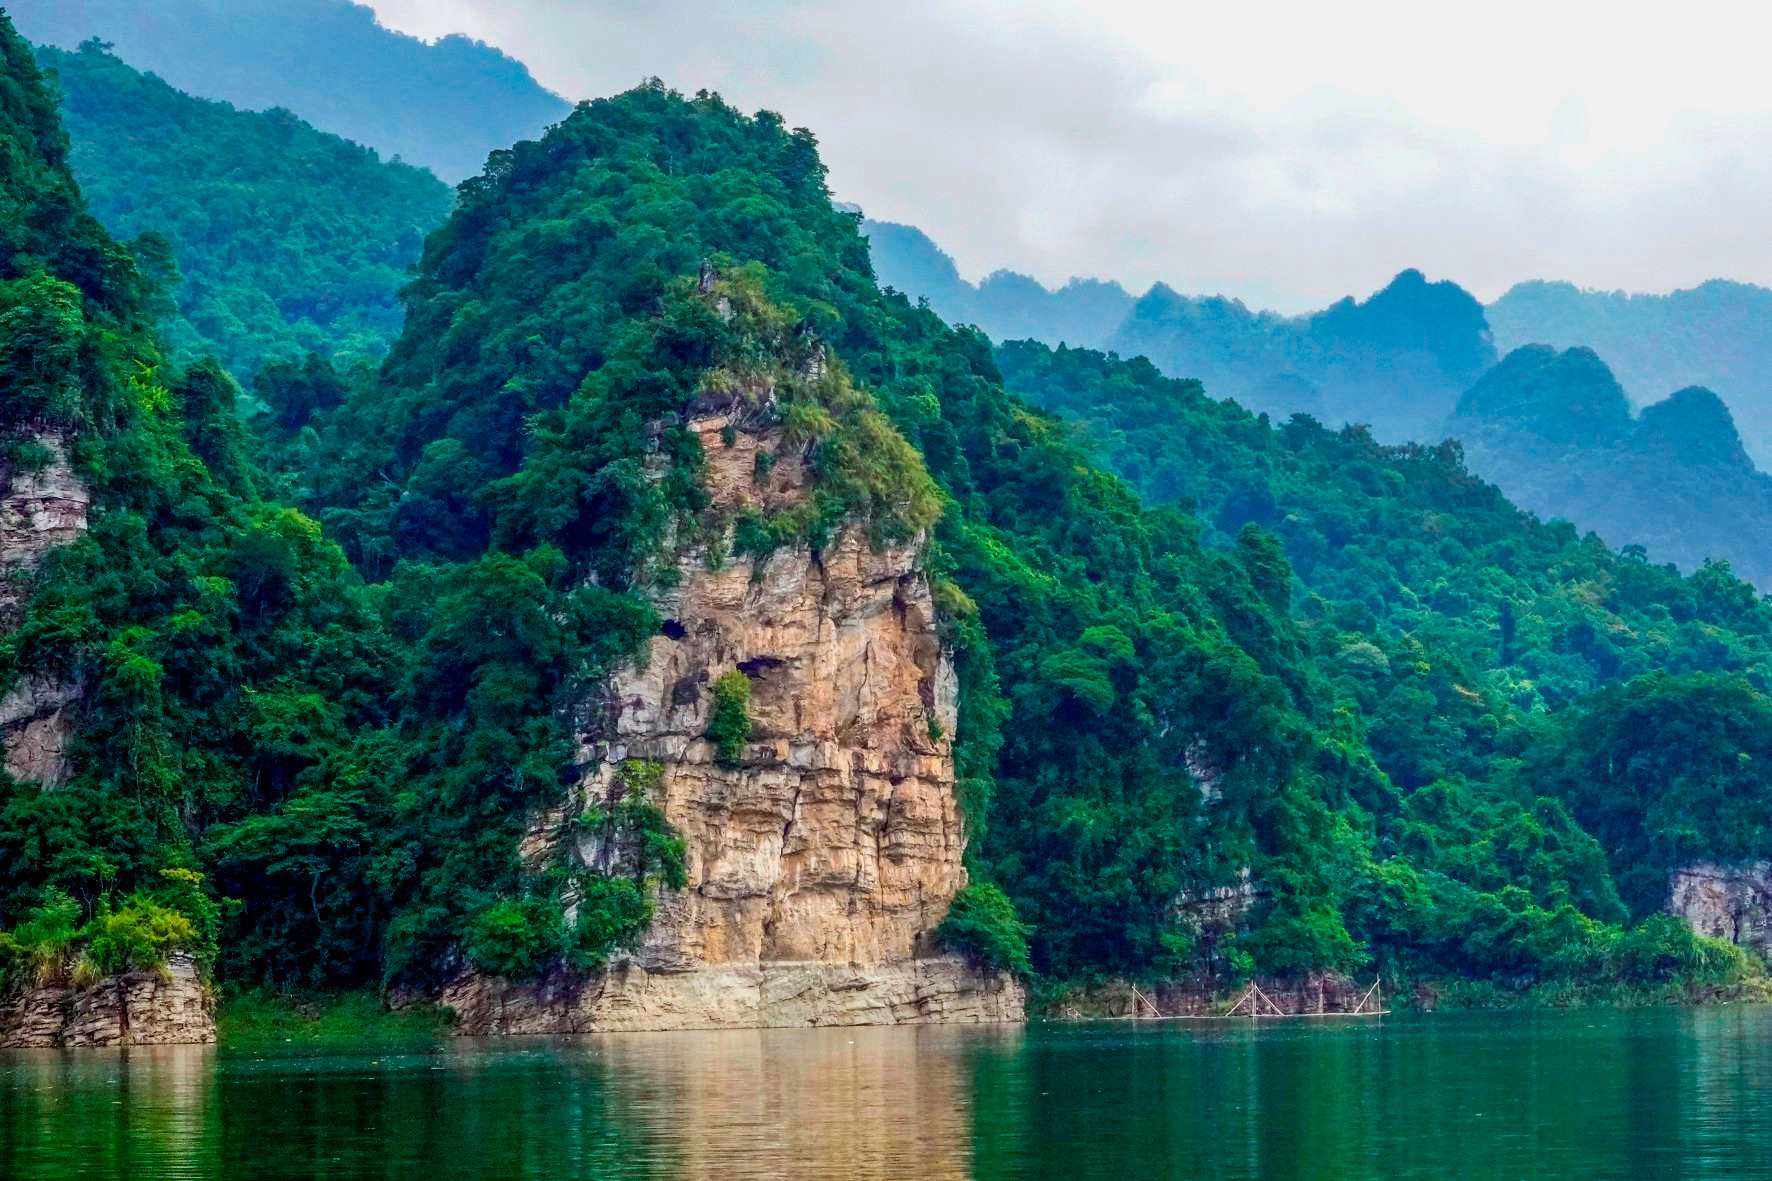 Hồ nước ngọt nhân tạo lớn nhất Tuyên Quang hiện ra đẹp như phim, có ngọn thác đổ, rừng nguyên sinh - Ảnh 8.